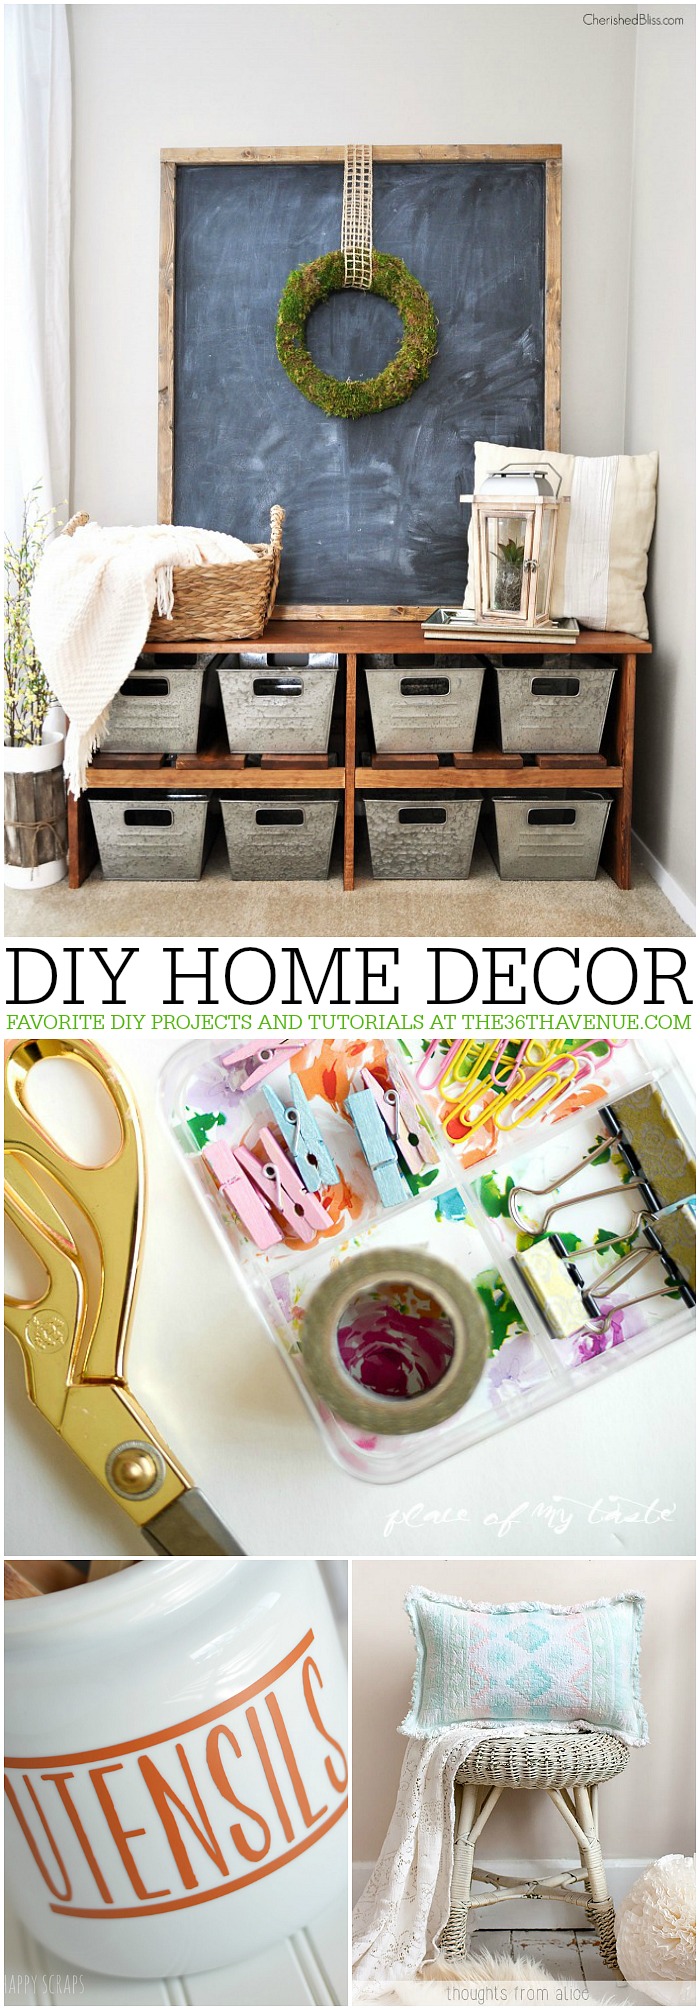 Home Decor DIY Ideas at the36thavenue.com These are so pretty!